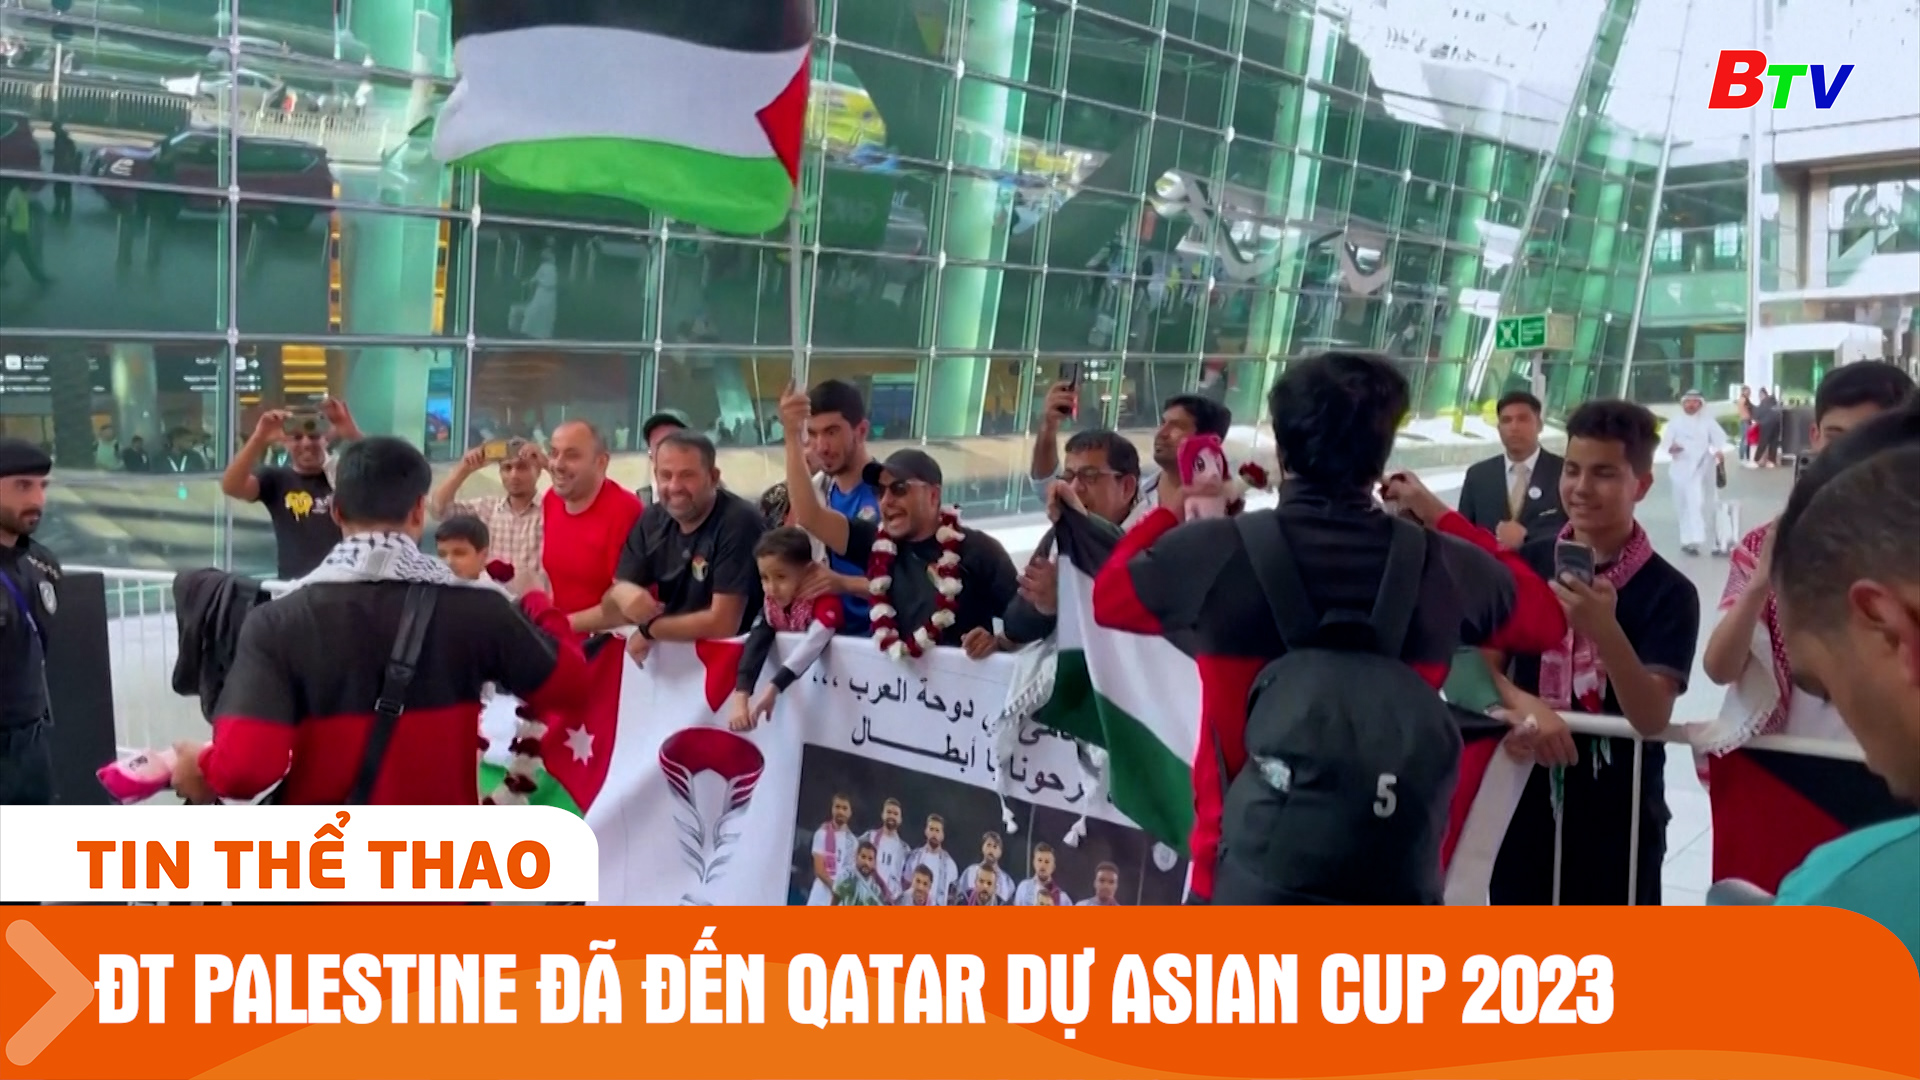 Đội tuyển bóng đá nam Palestine đã đến Qatar dự Asian Cup 2023 | Tin Thể thao 24h	